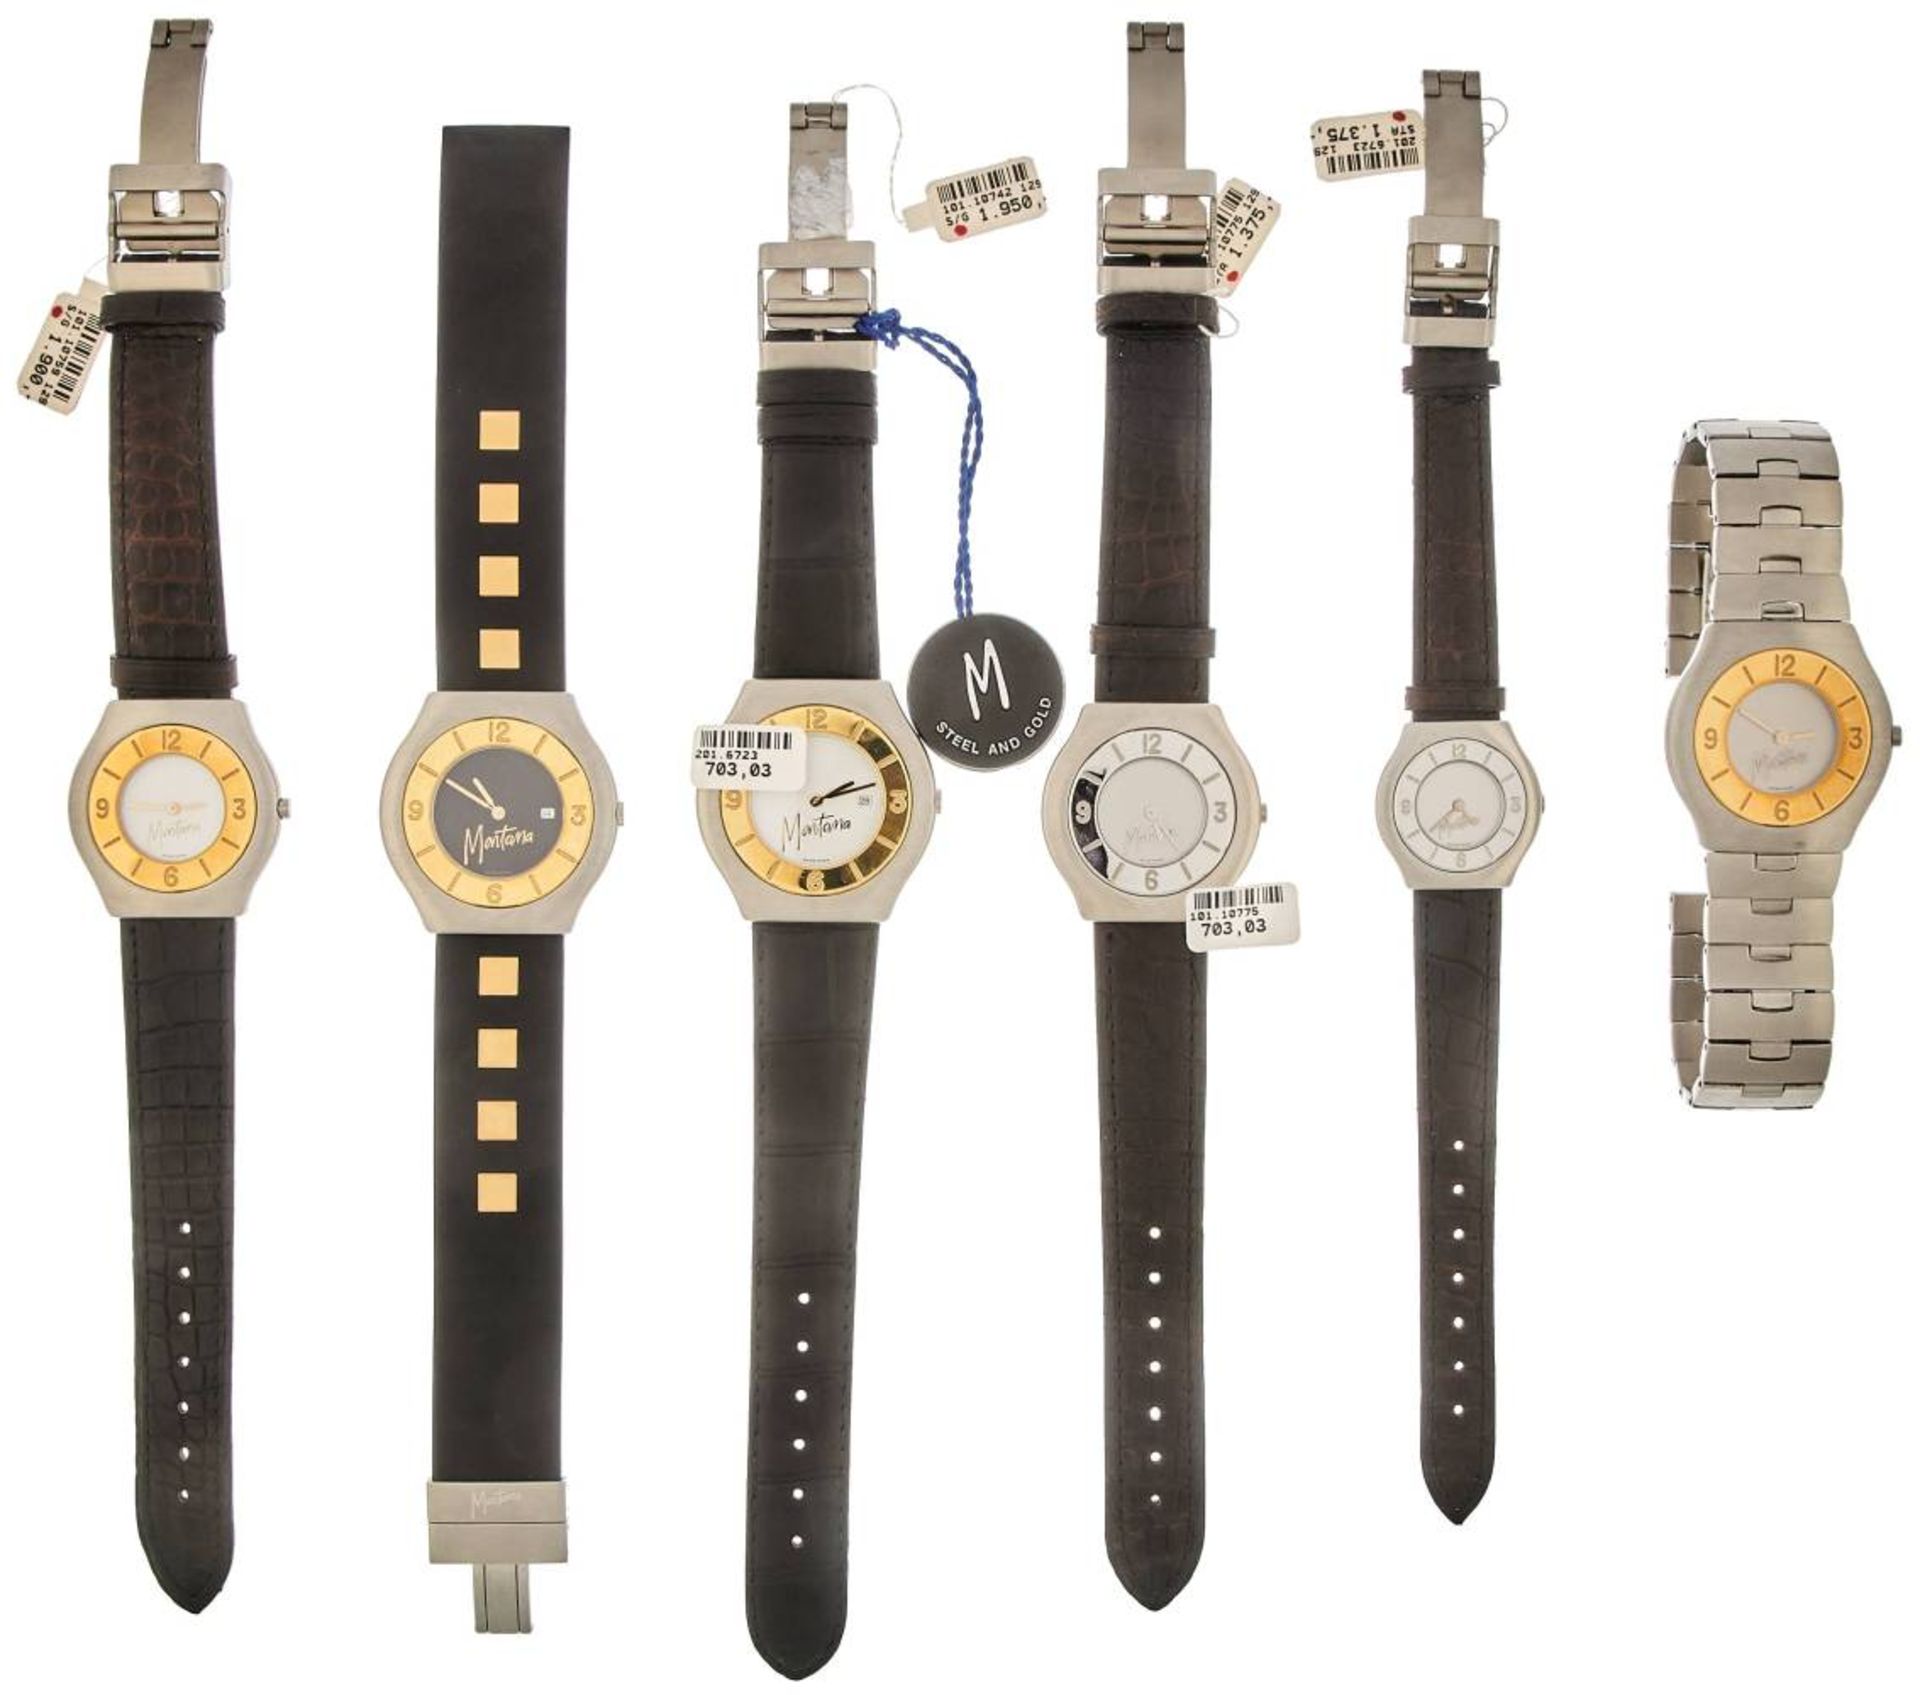 Montana Watch Company Herren/Damen Armbanduhren. Sammlung von 6 Montana Armbanduhren in Gold/ - Bild 2 aus 2